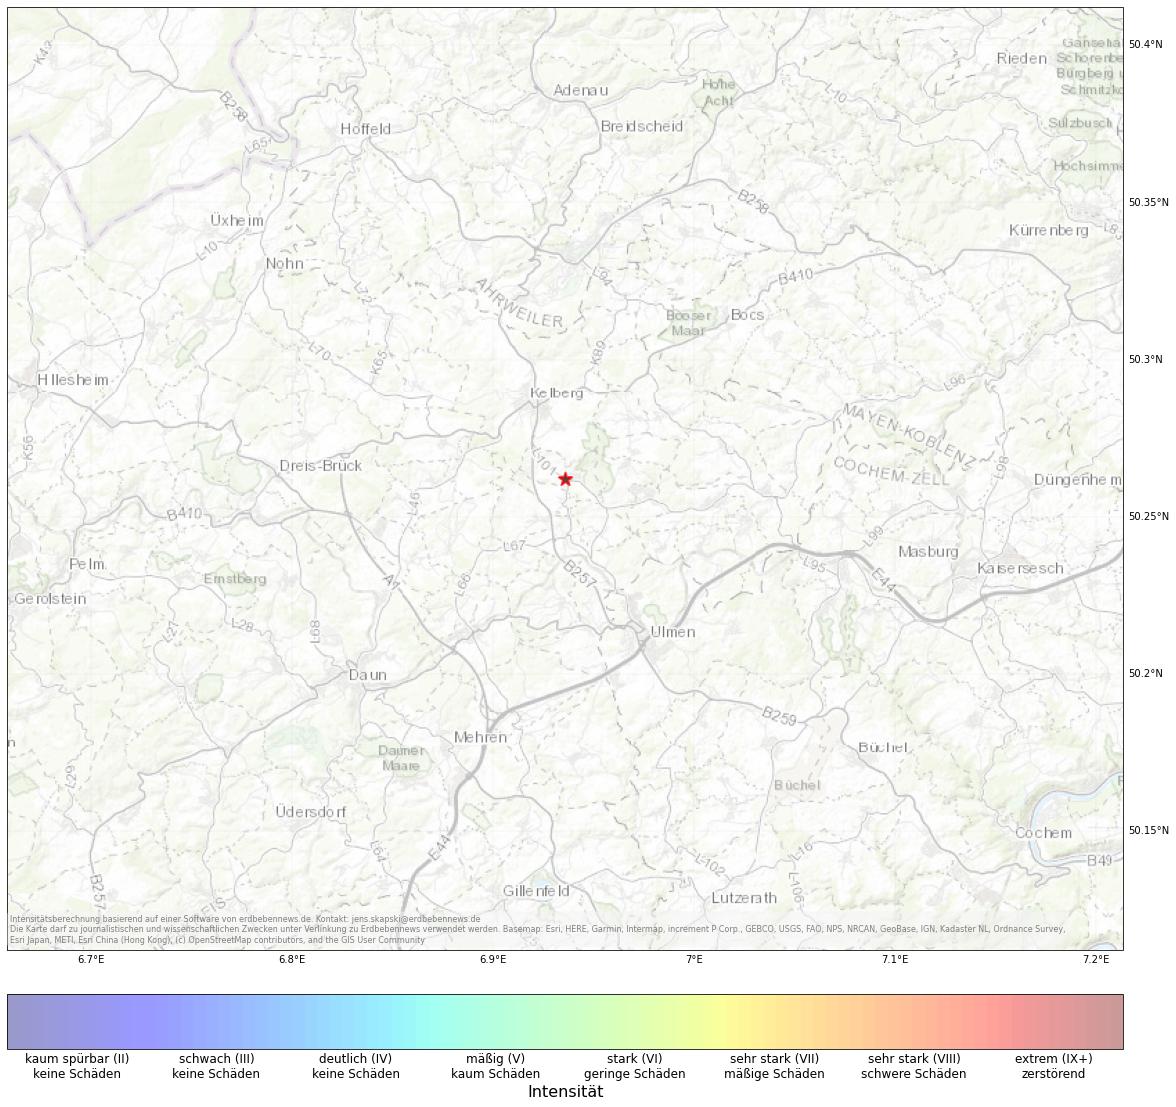 Berechnete Intensität (ShakeMap) des Erdbebens der Stärke 1.0 am 02. February, 12:55 in Deutschland